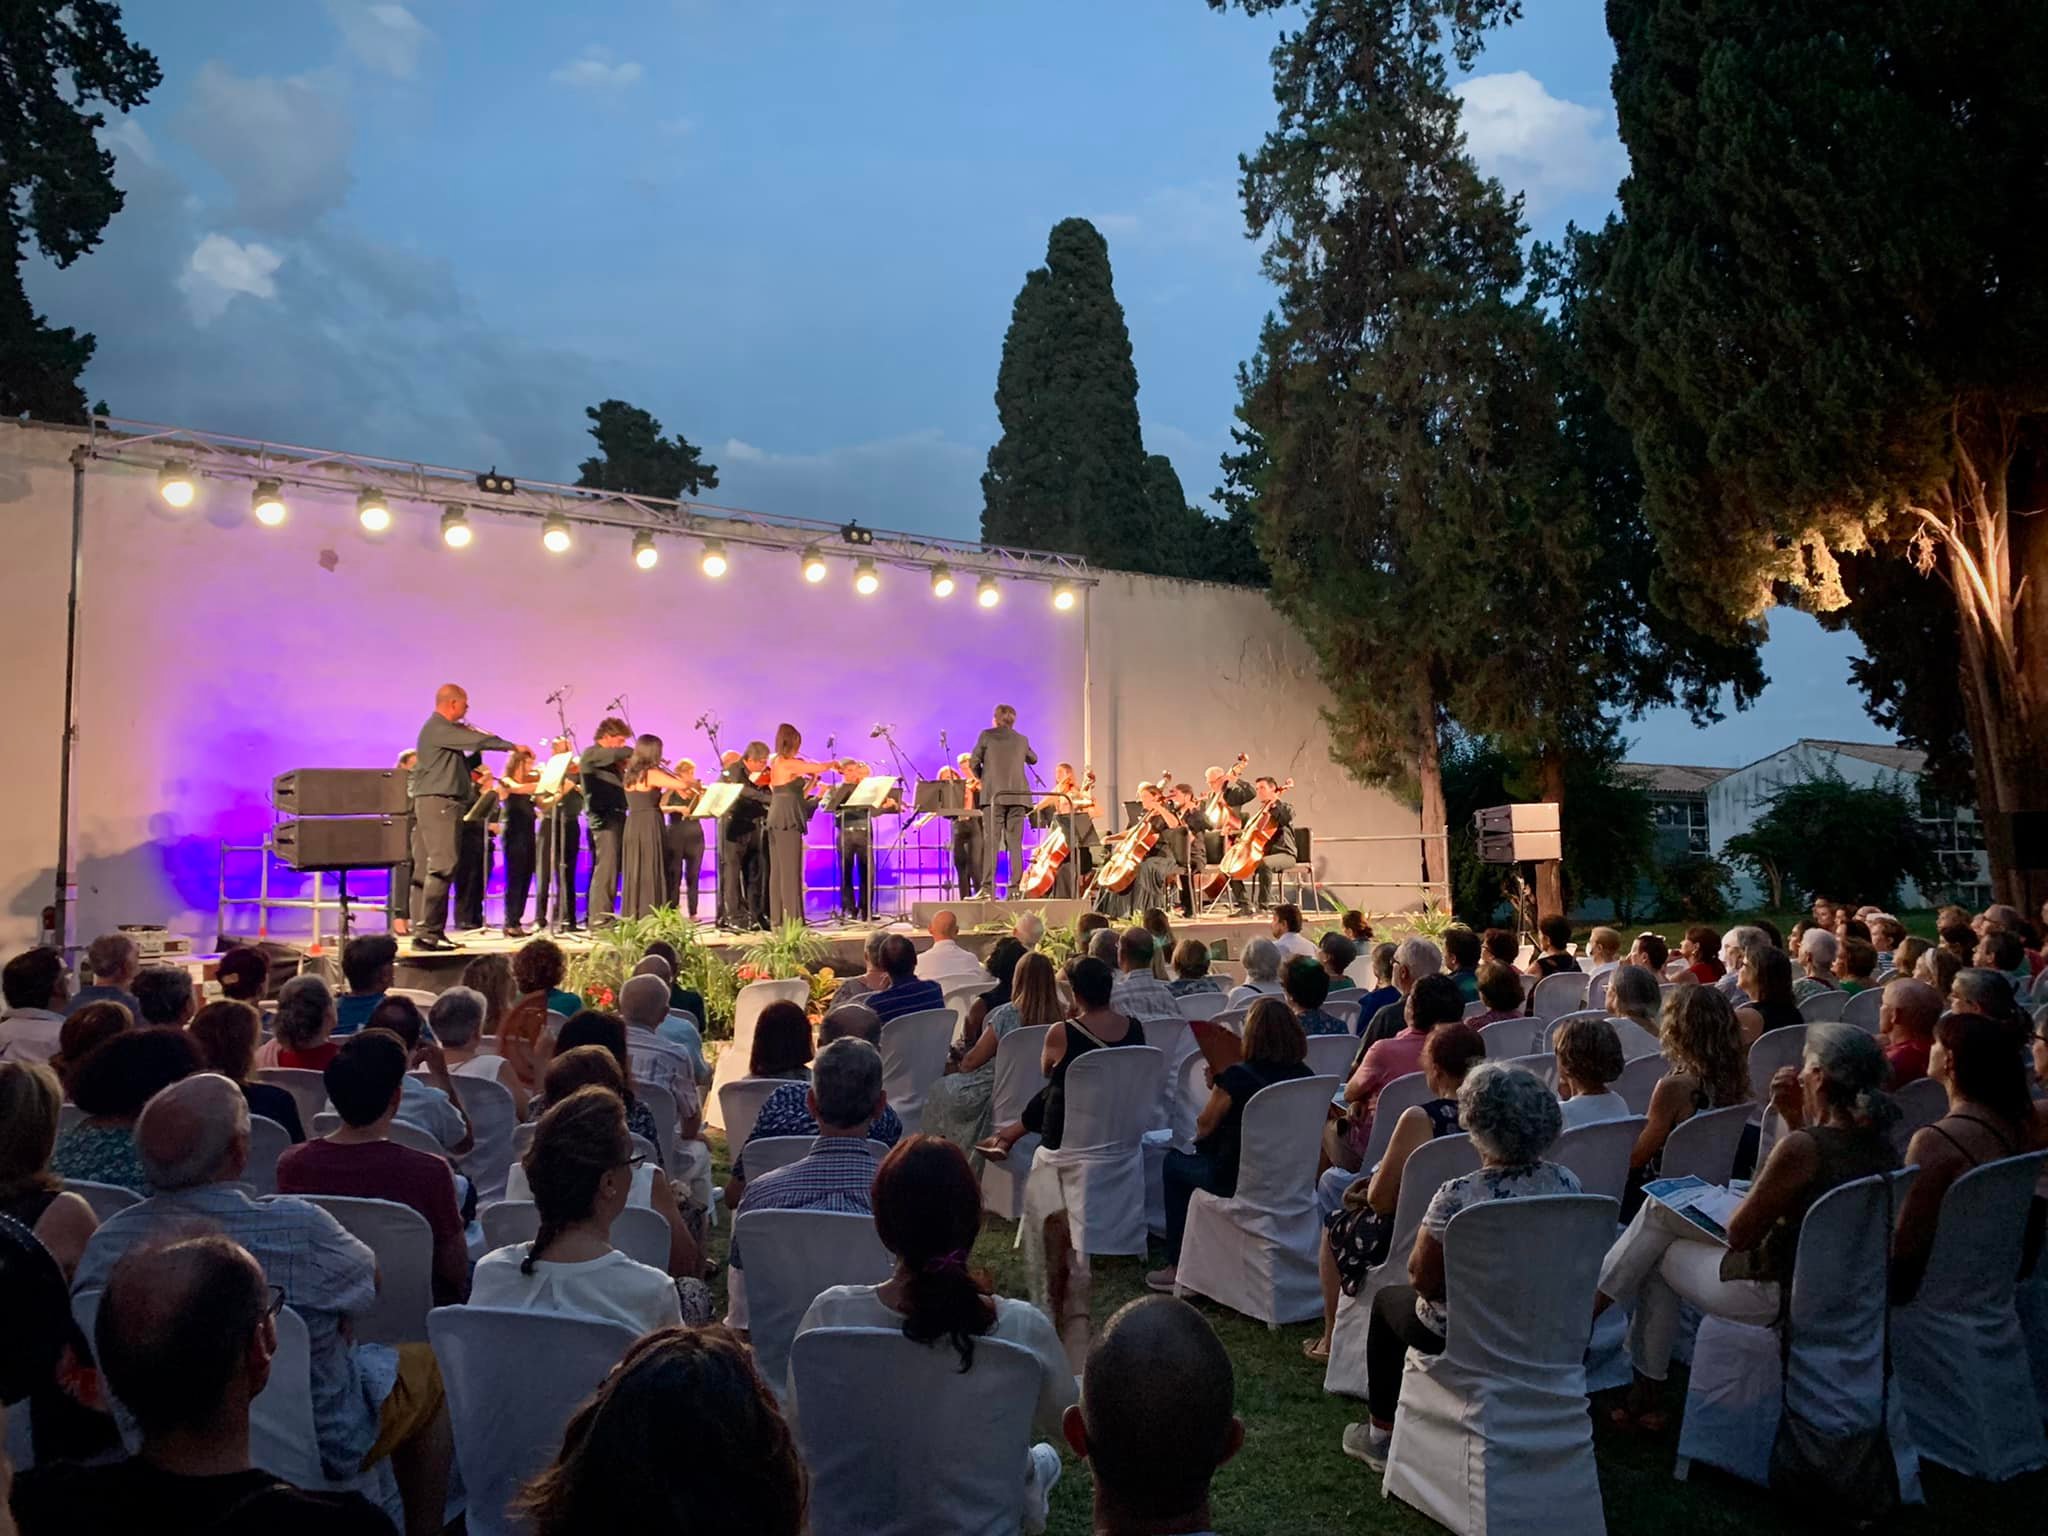 La Orquesta de Córdoba sorprende al público en un escenario único para hablar del poder del amor y de la aceptación.